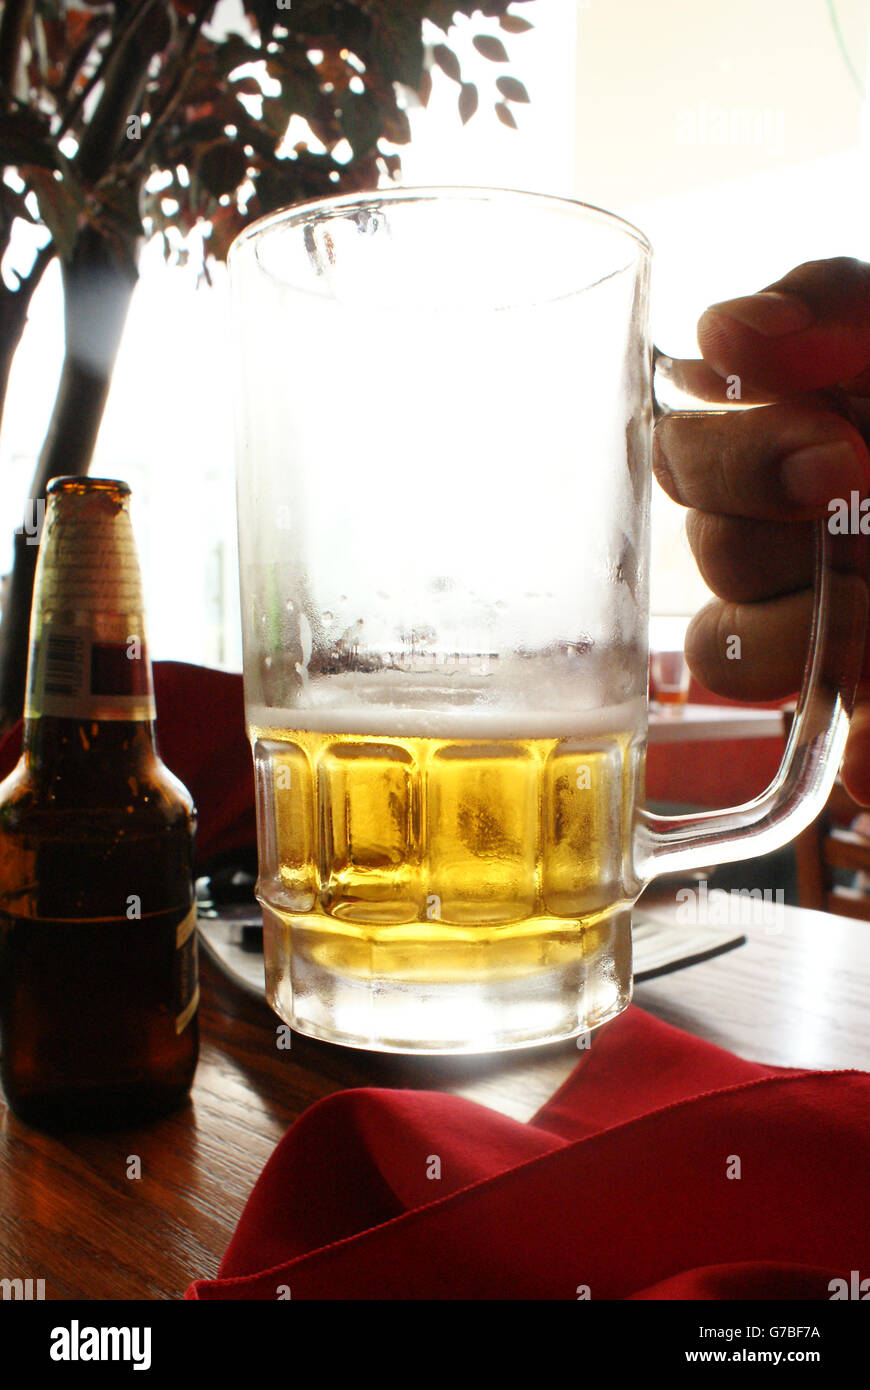 Foto von einem Glas Bier hob eine Hand Stockfoto